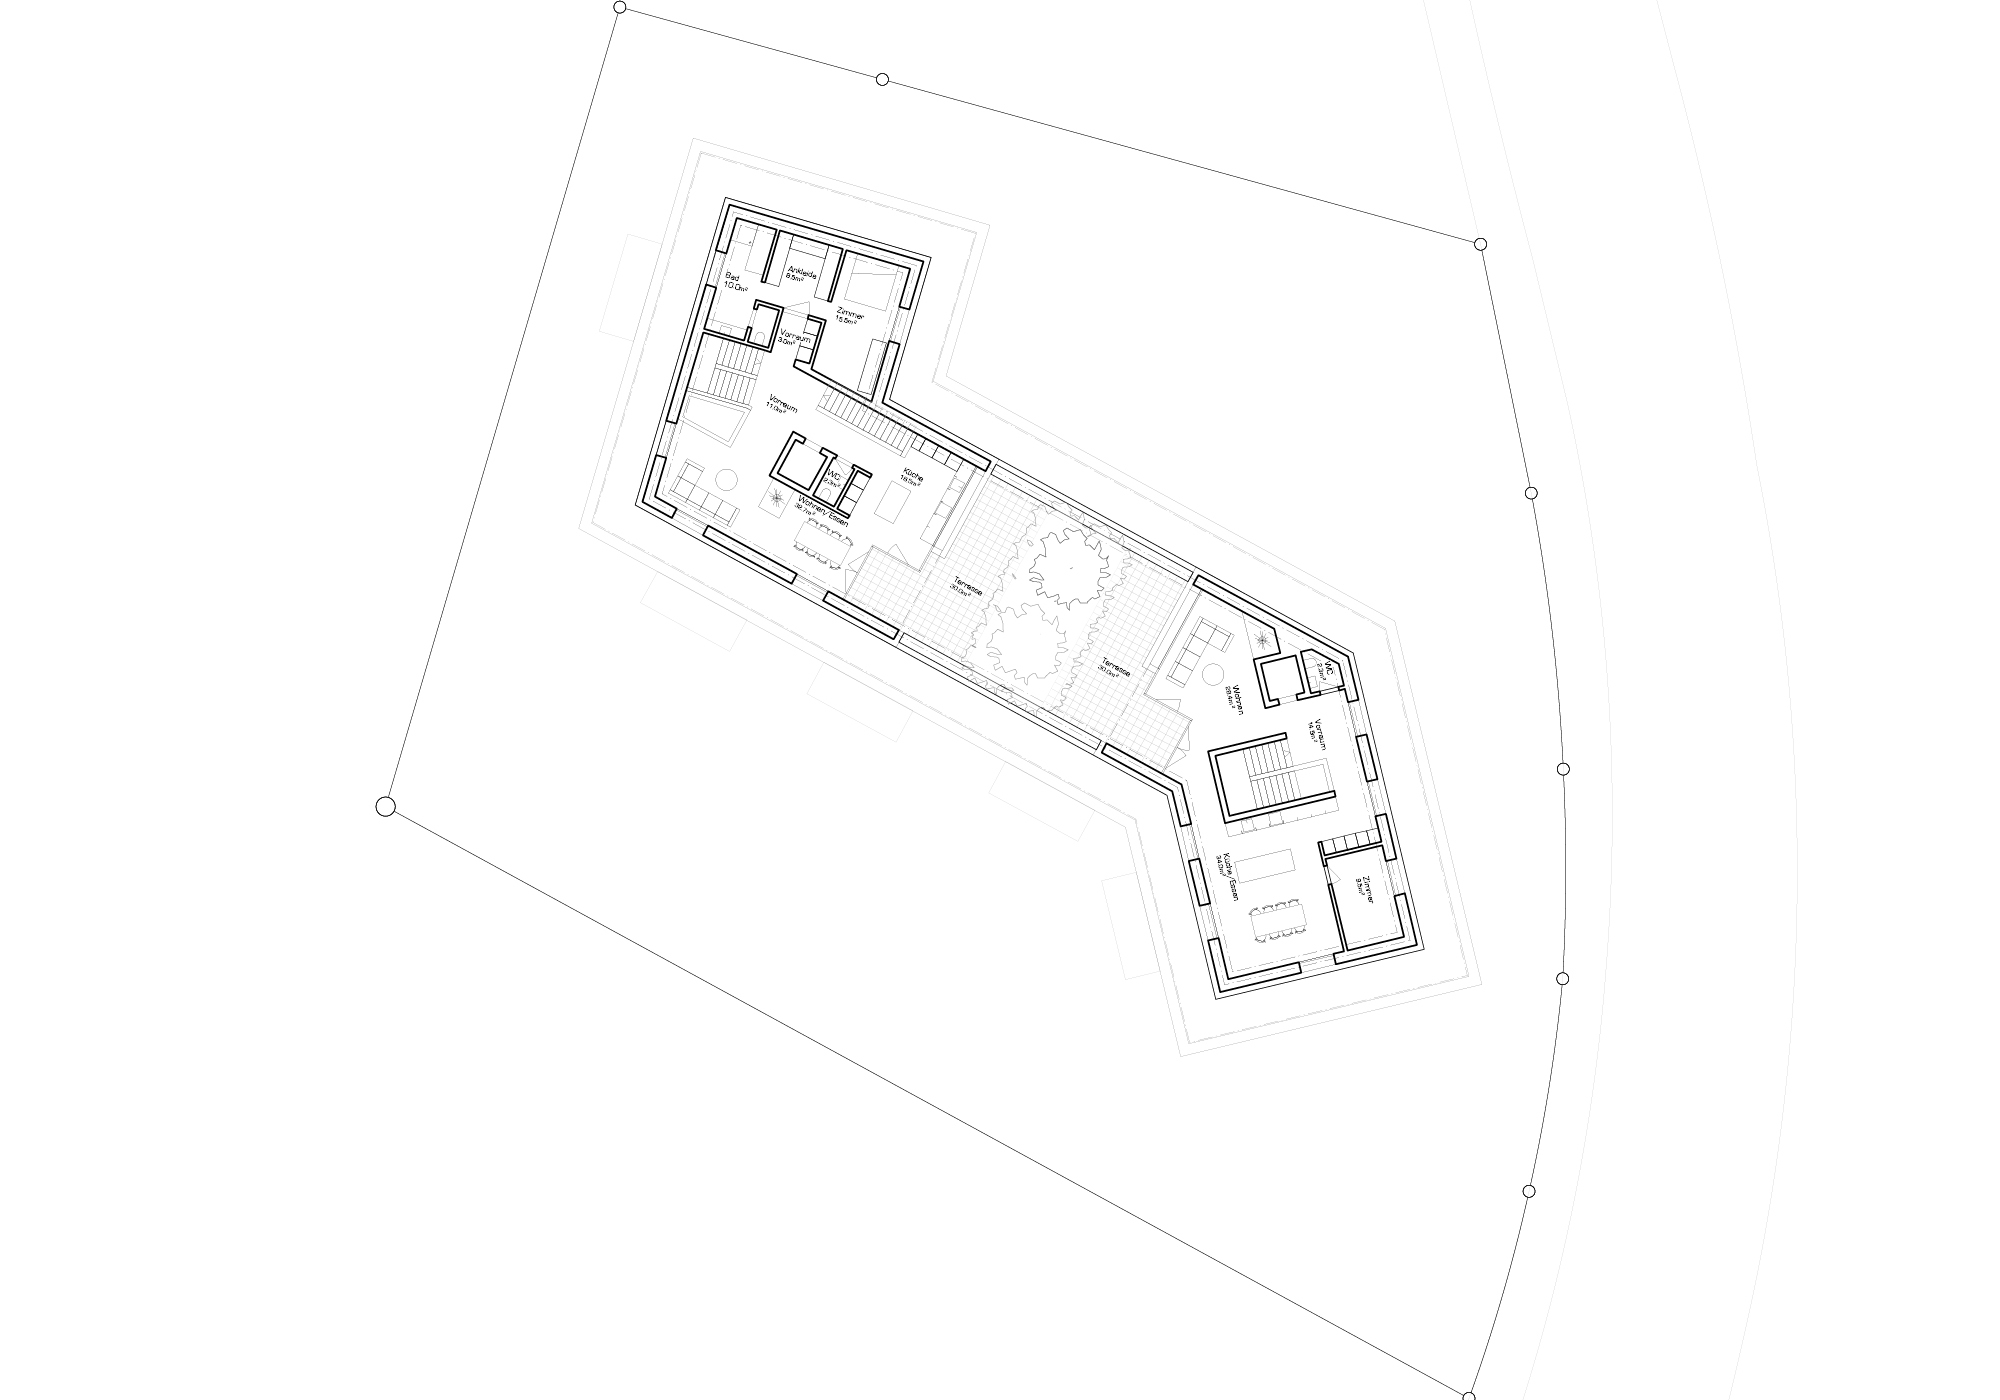 DOA – Davide Orlando Architektur GmbH – WETTBEWERB LUNA